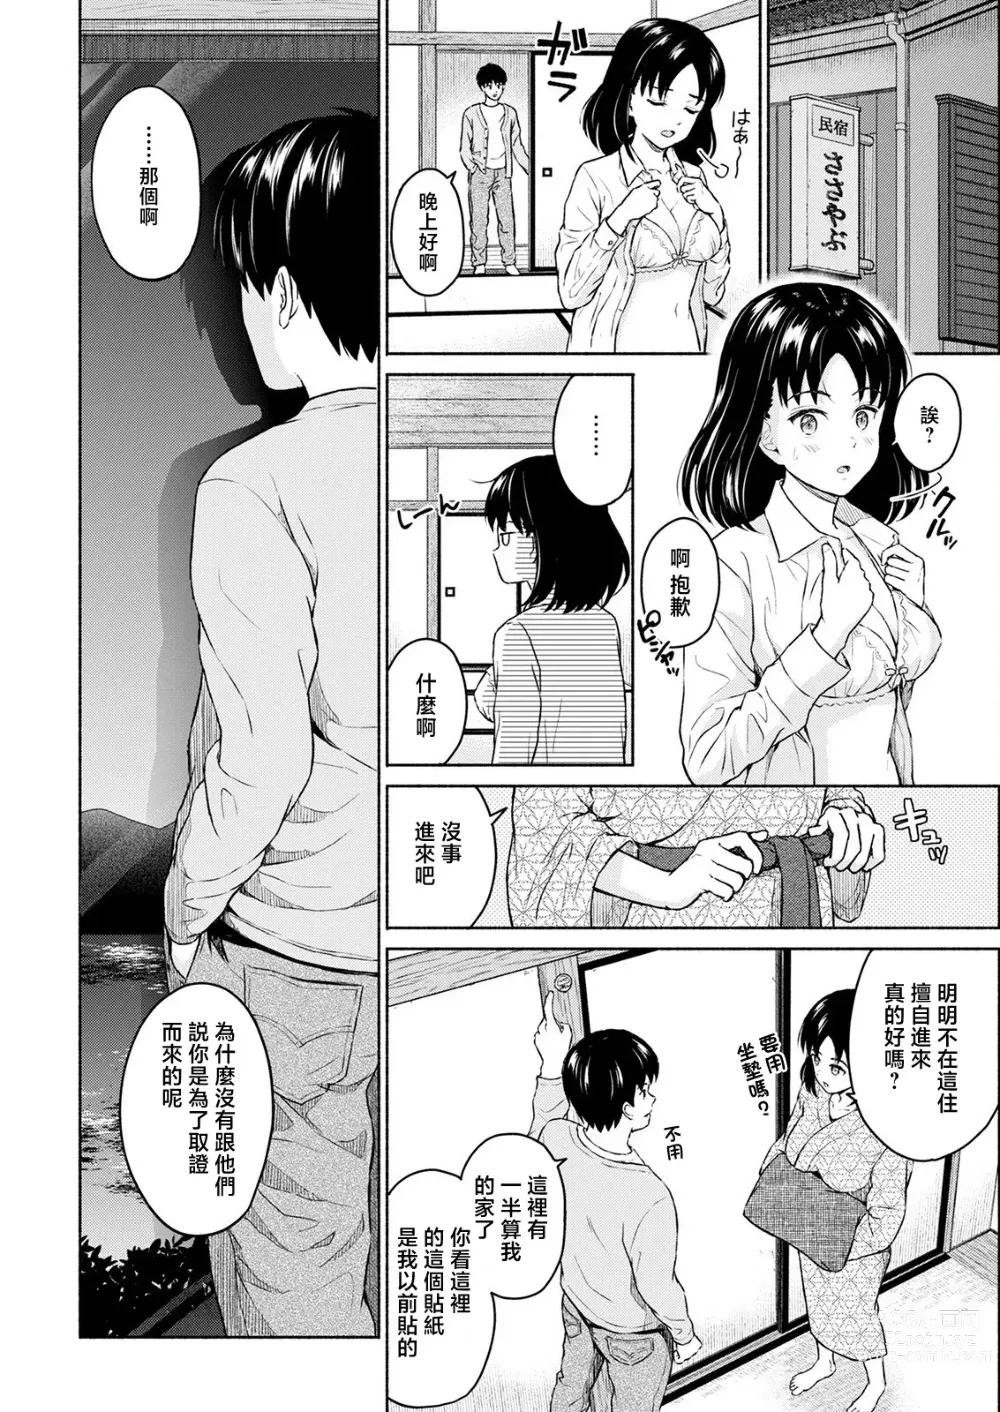 Page 8 of manga Marude Rokugatsu no Kohan o Fuku Kaze no you ni Zenpen